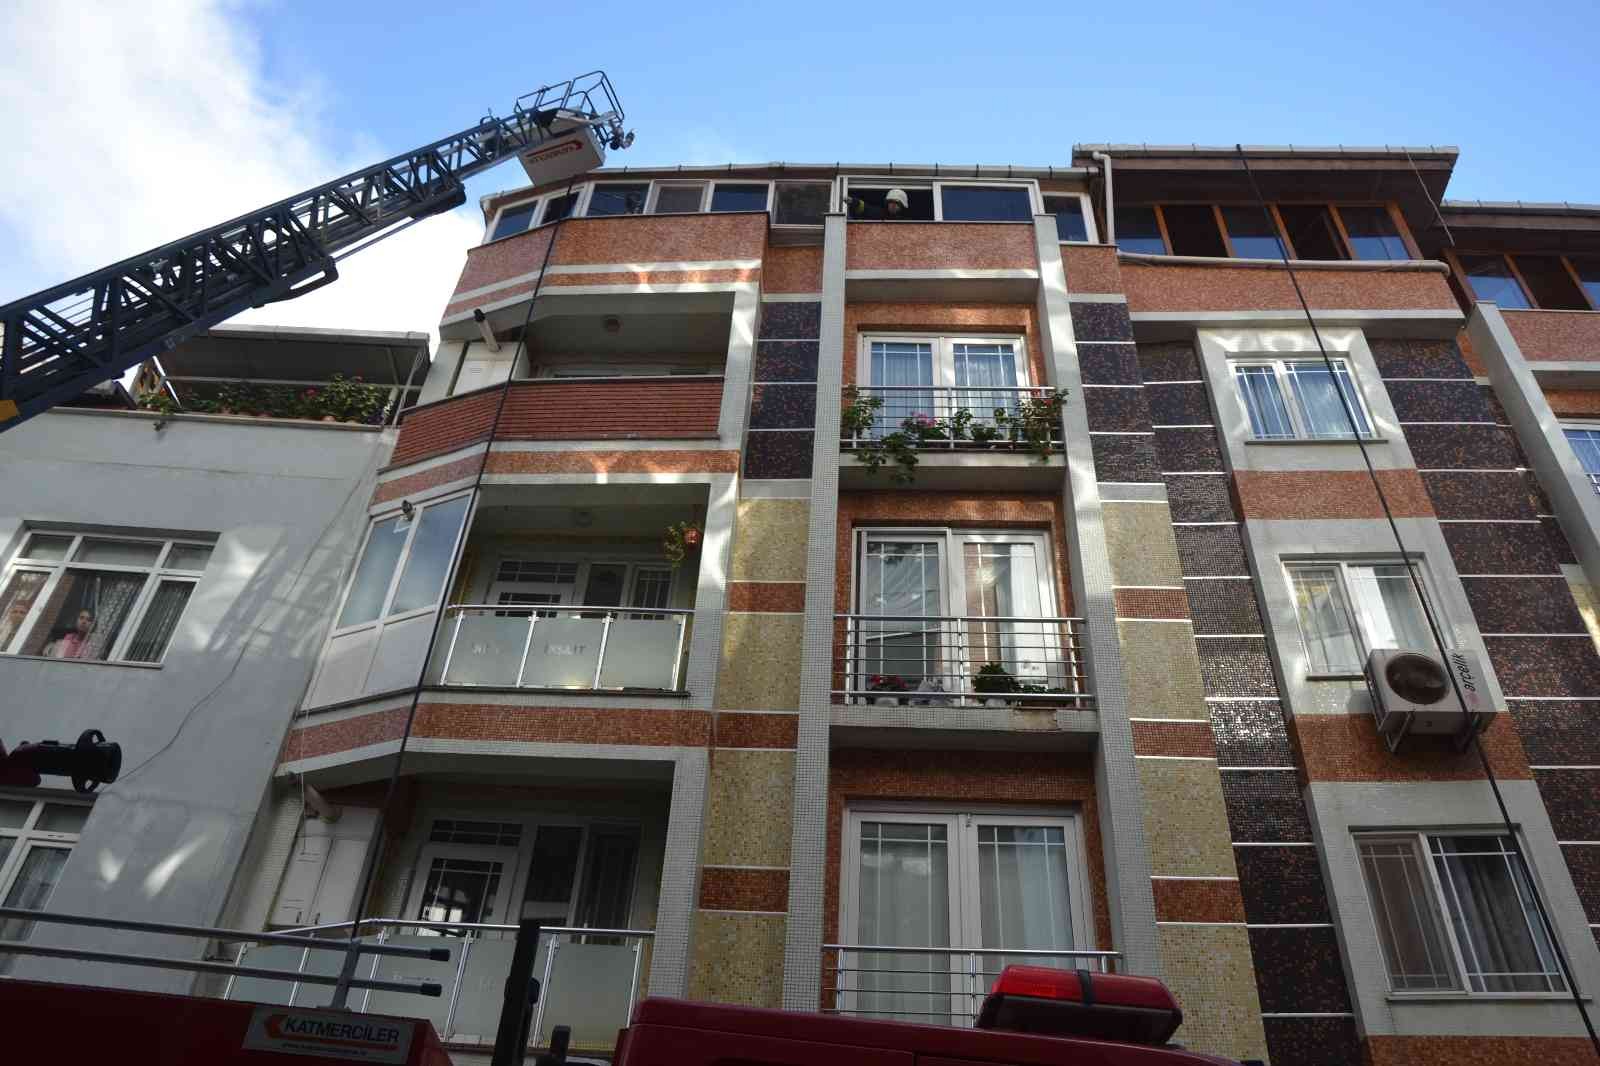 Biga’da bir apartmanın teras katında yangın çıktı #canakkale